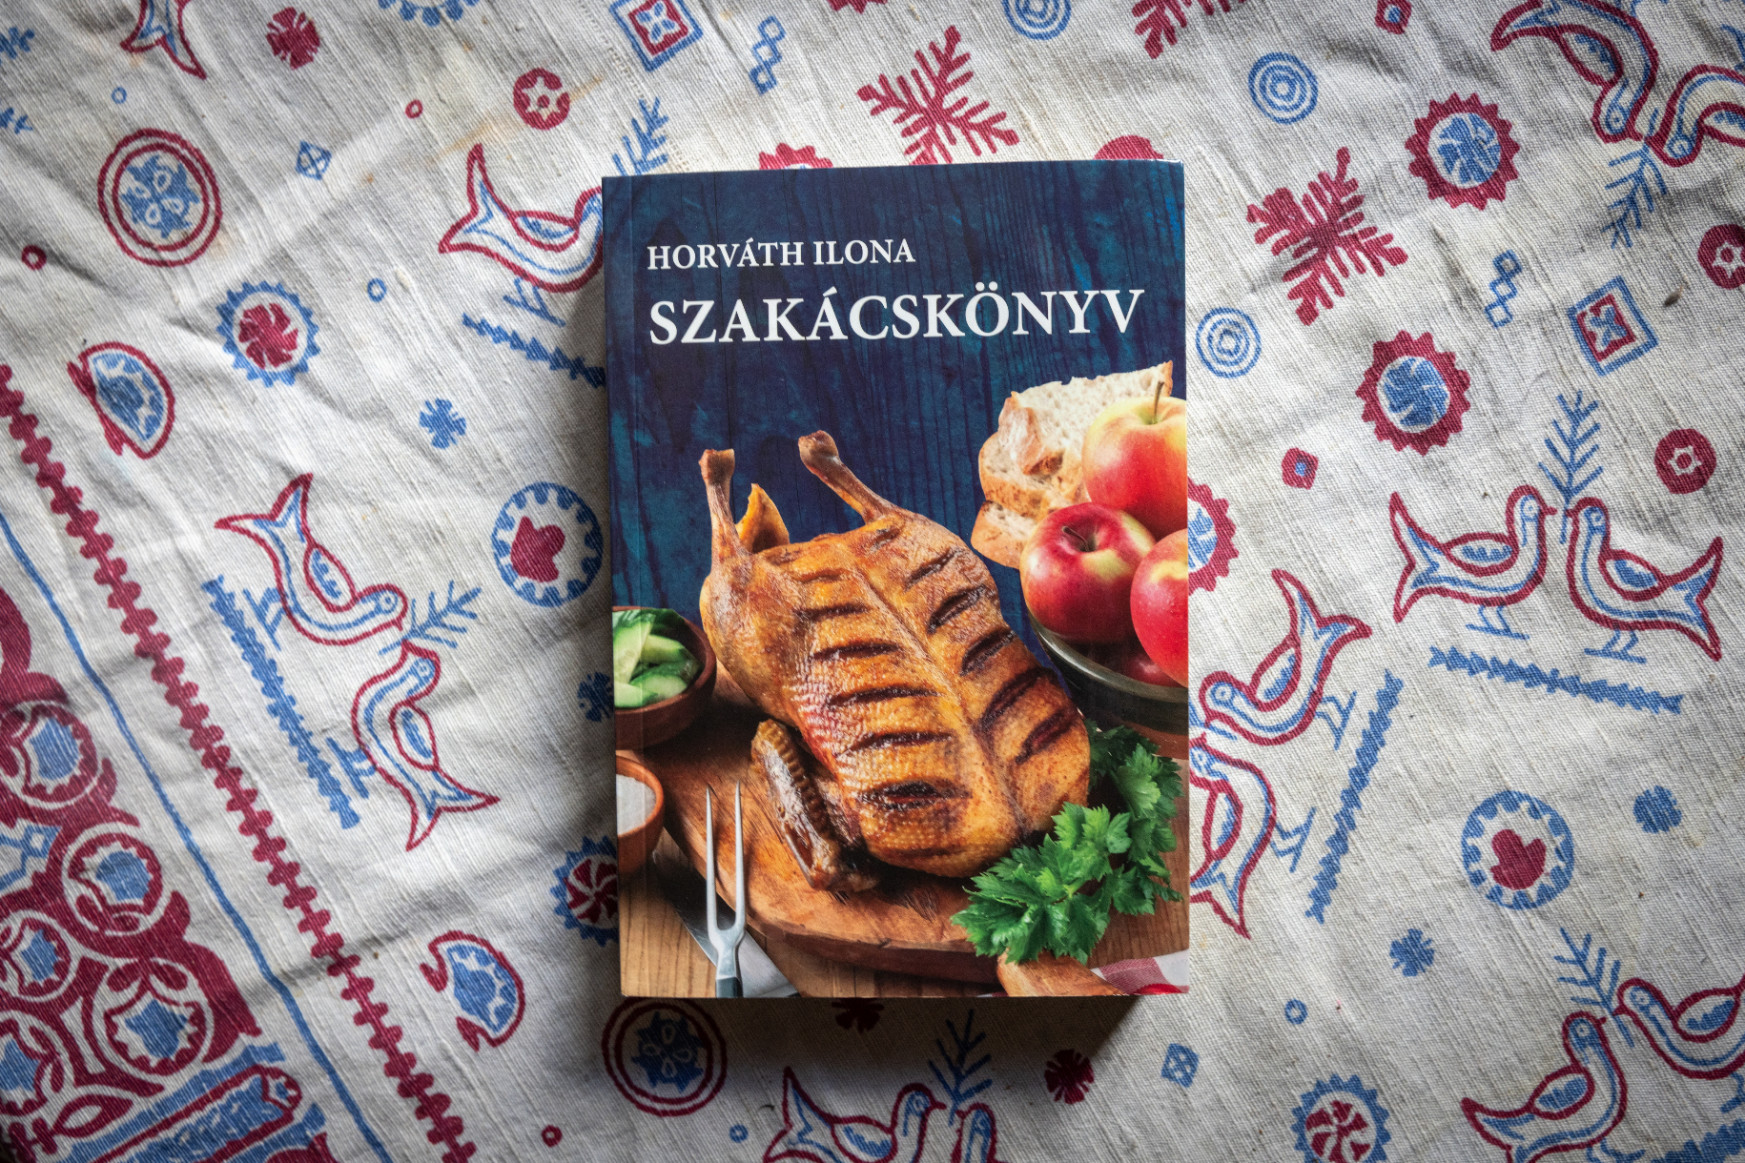 Mi köze a leghíresebb magyar szakácskönyvnek Örkény Istvánhoz és a román királyhoz?